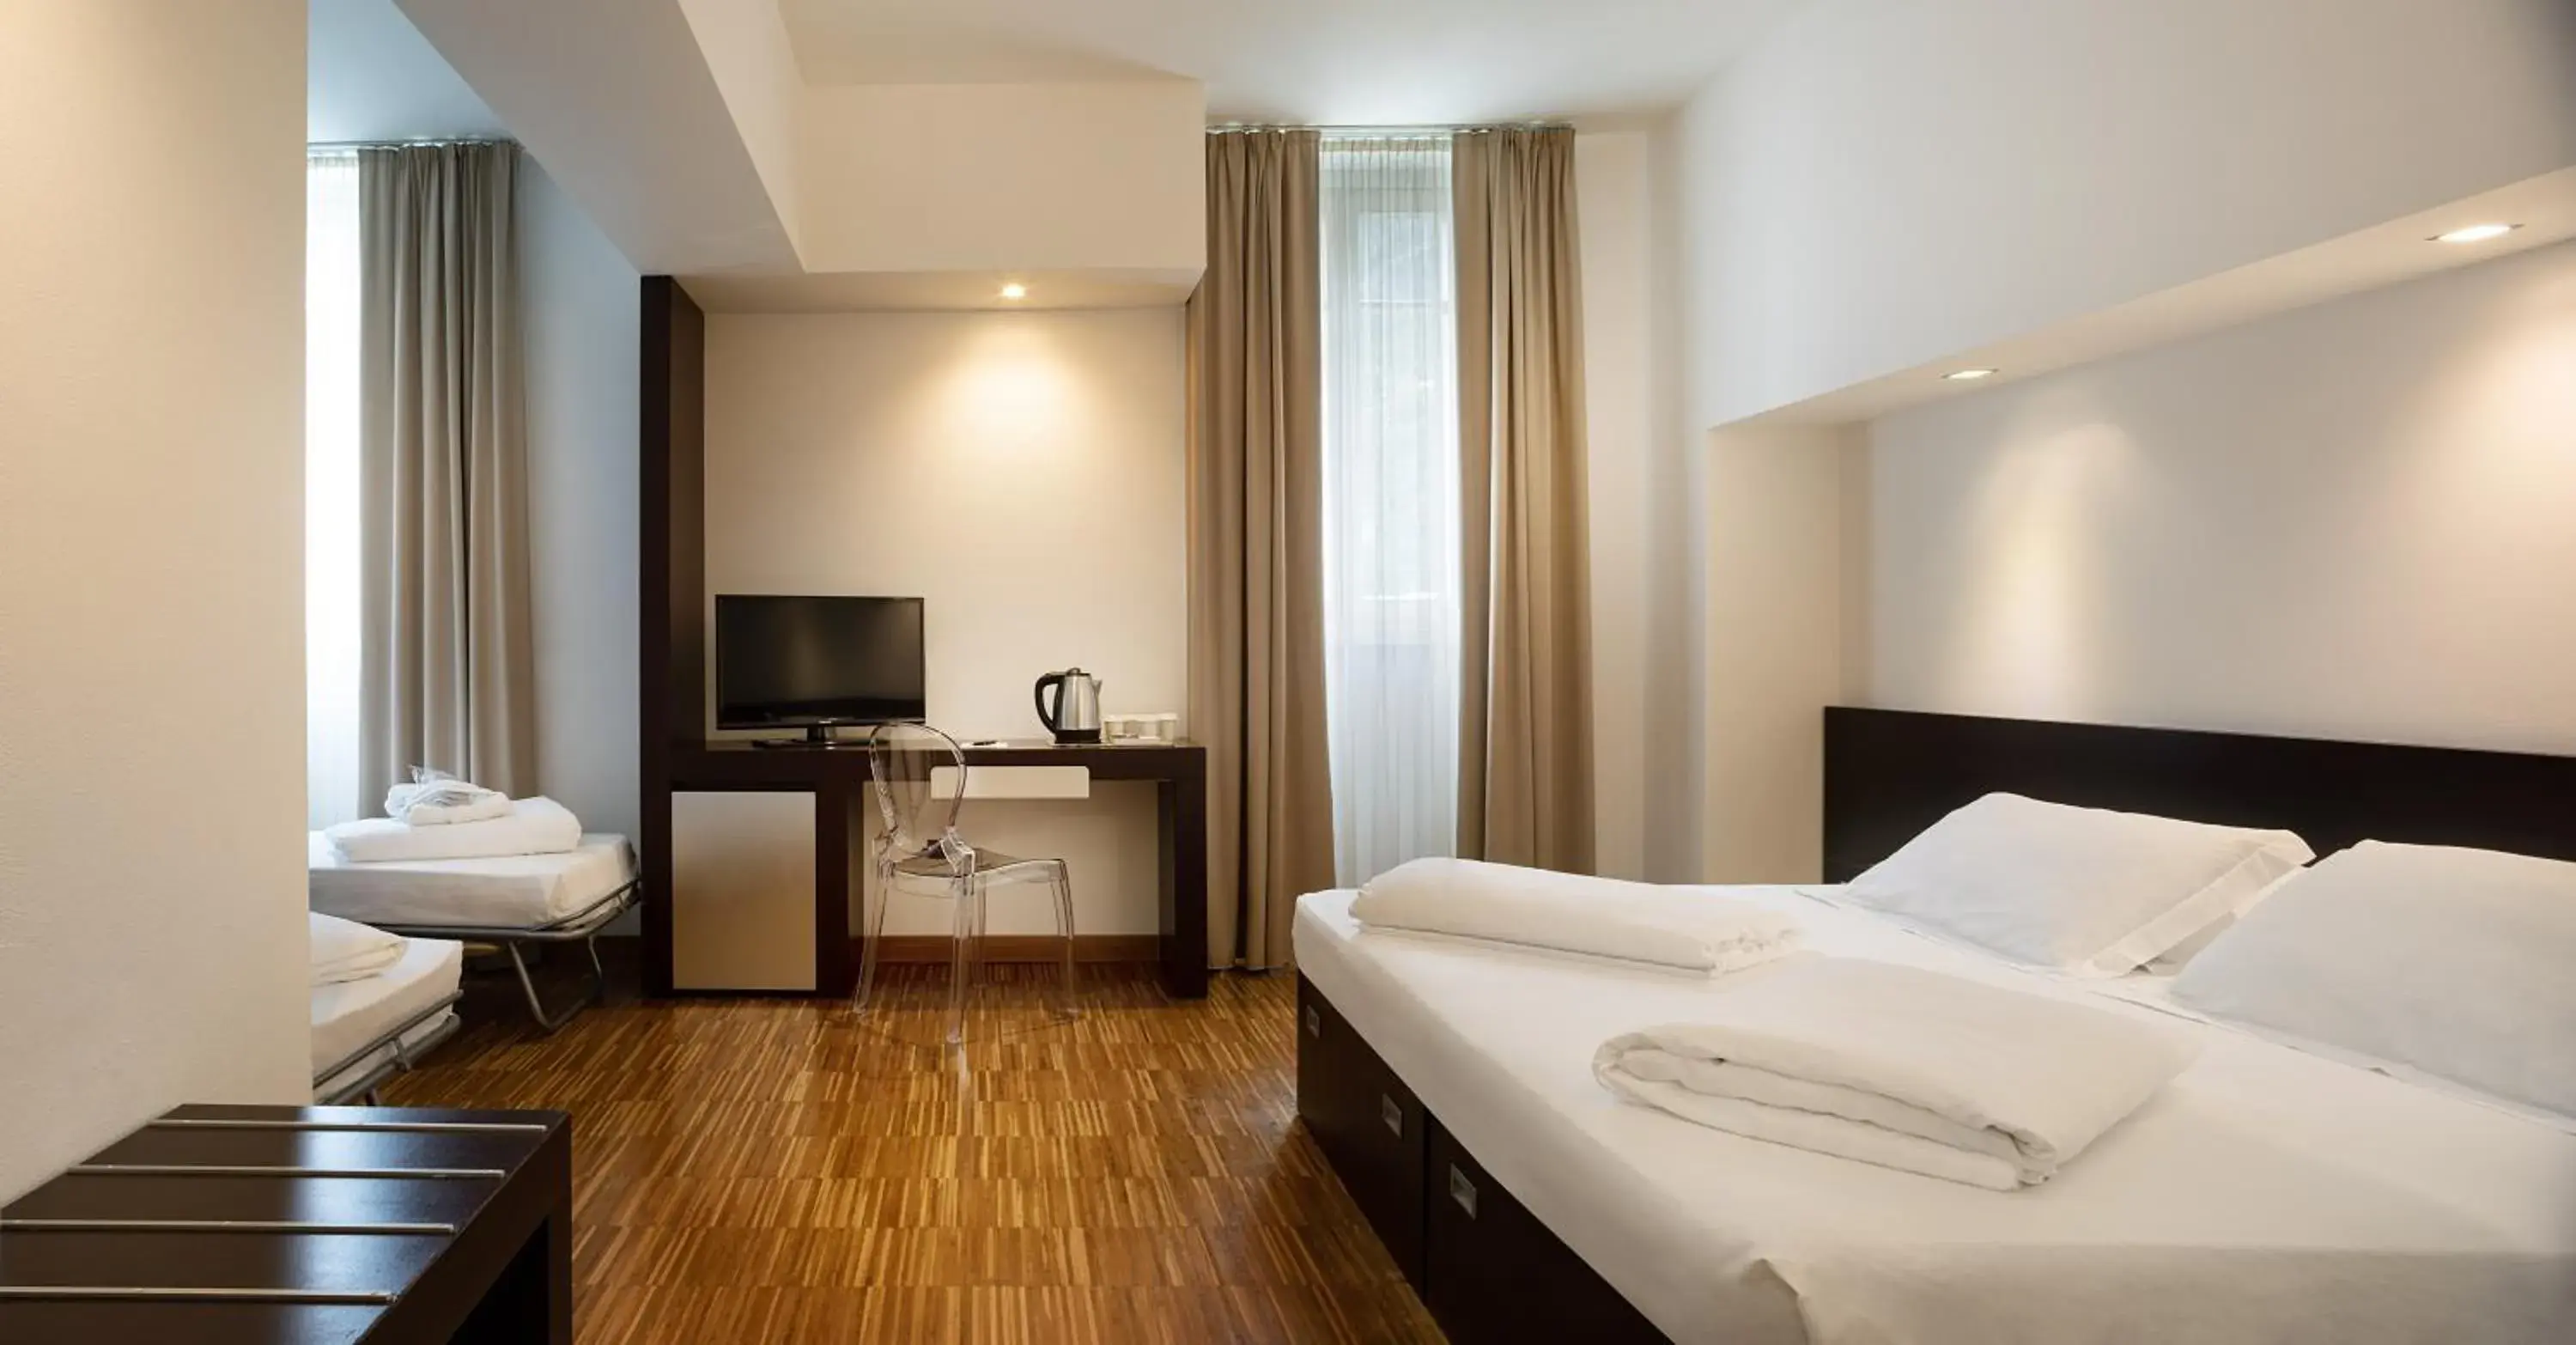 Quadruple Room in Astoria Resort